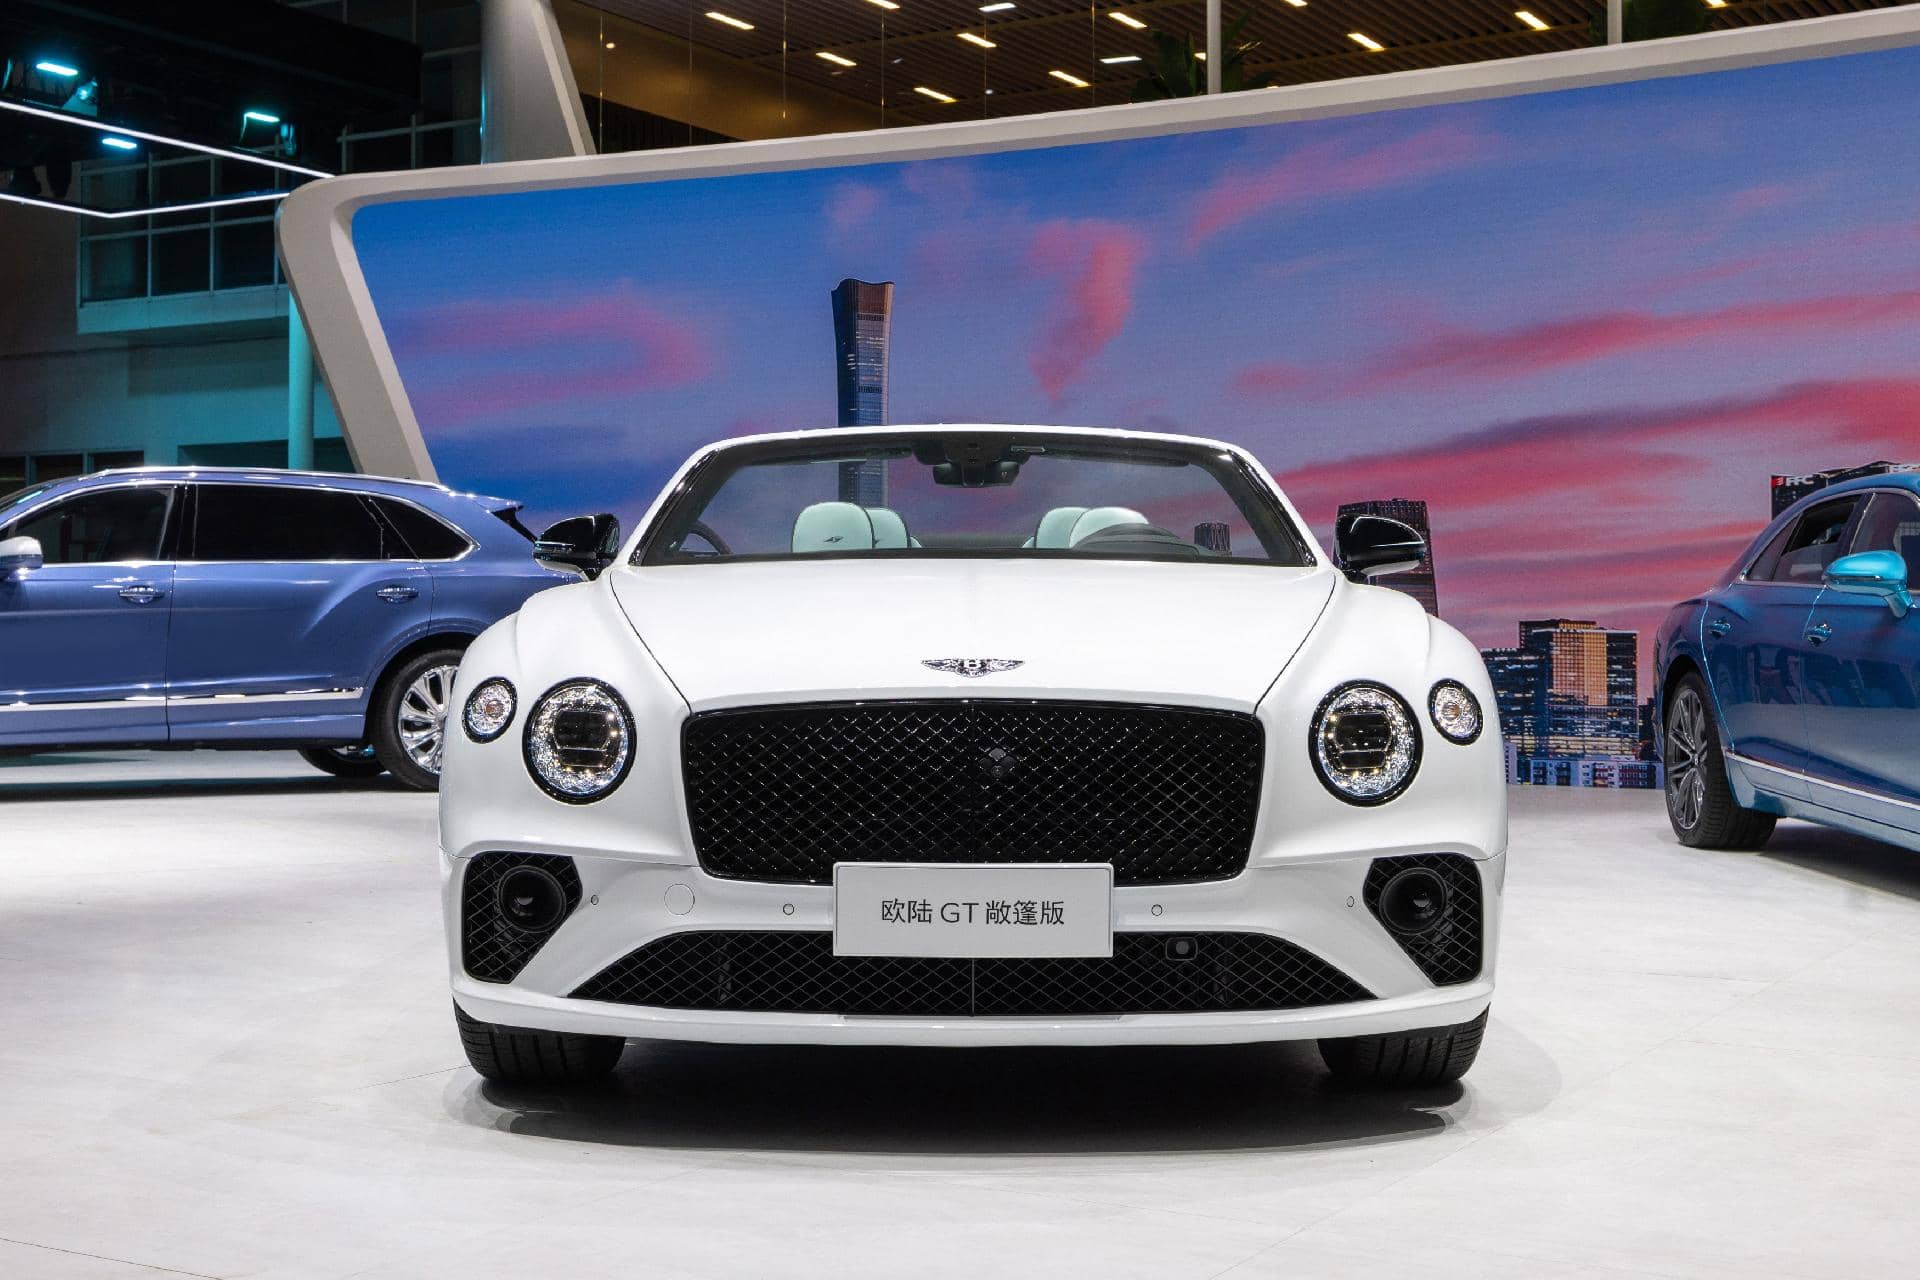 Vista frontal del Bentley con su característica parrilla y faros imponentes.